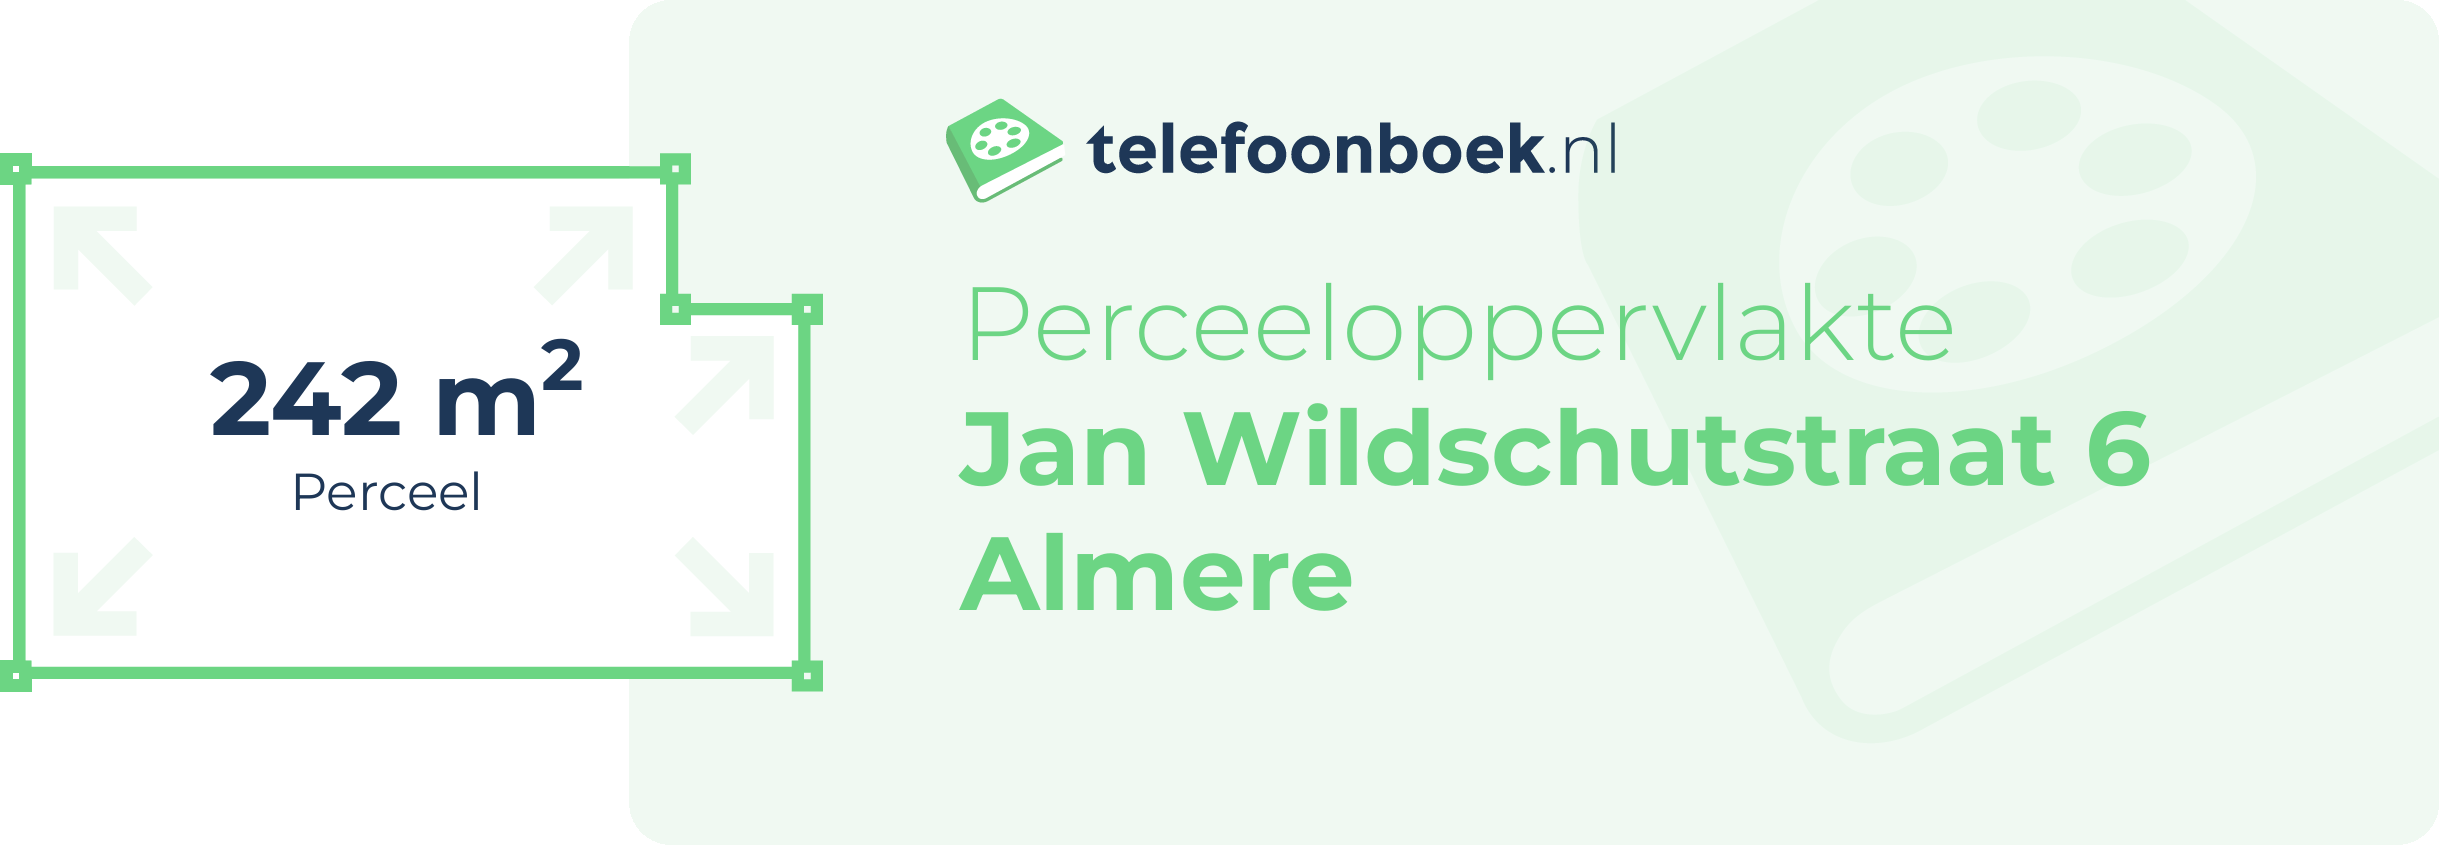 Perceeloppervlakte Jan Wildschutstraat 6 Almere